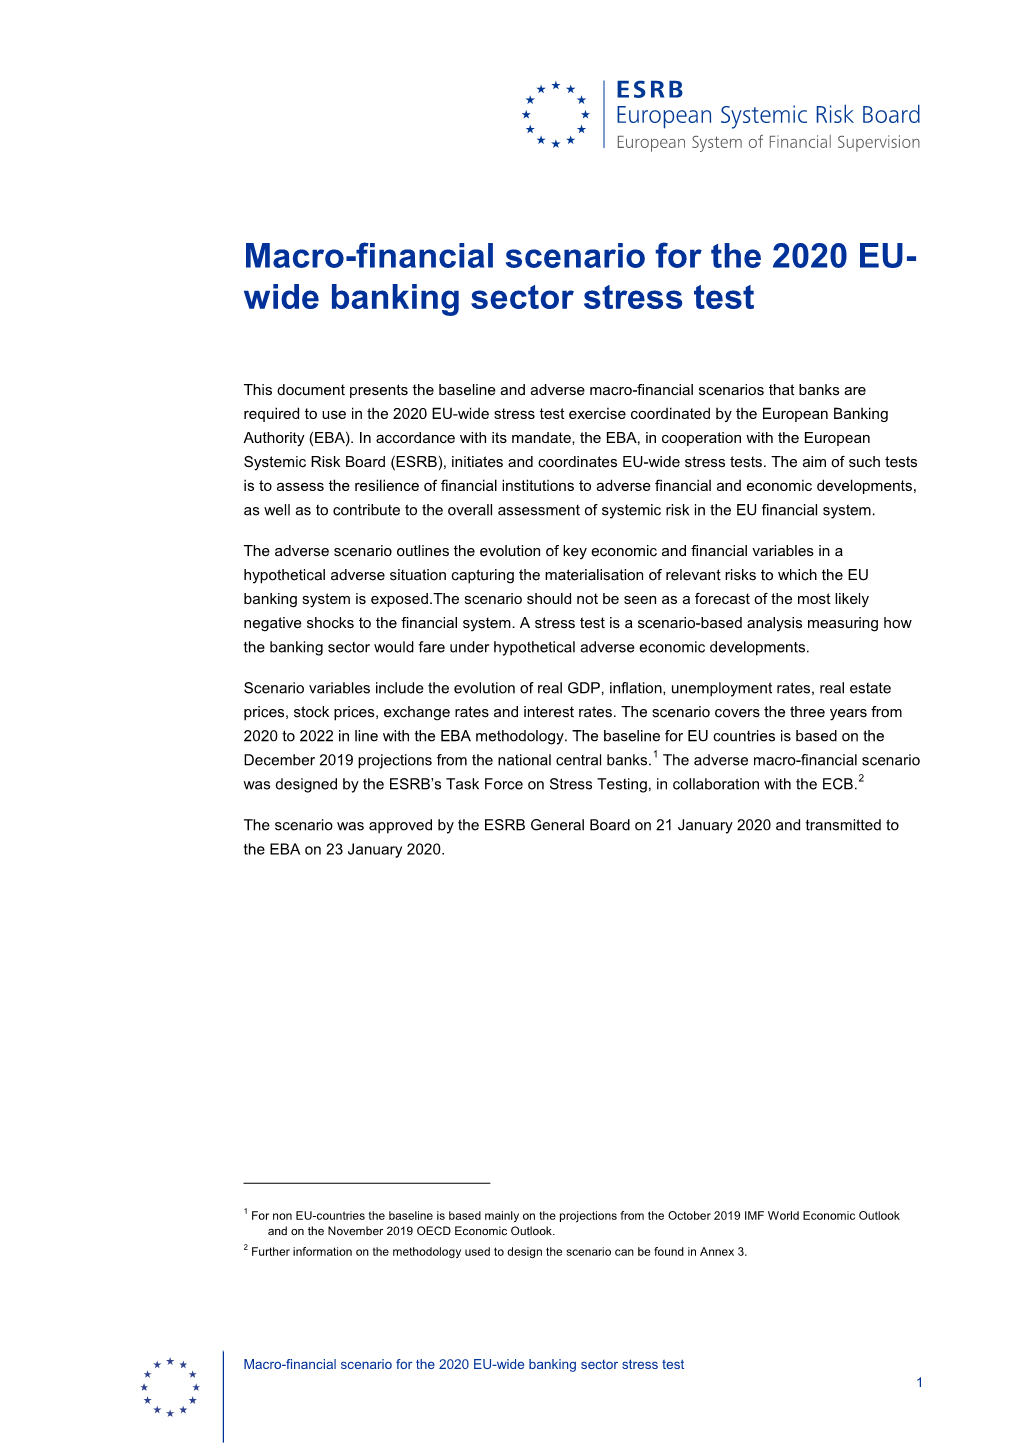 Adverse Scenario for the EBA 2020 EU-Wide Banking Sector Stress Test